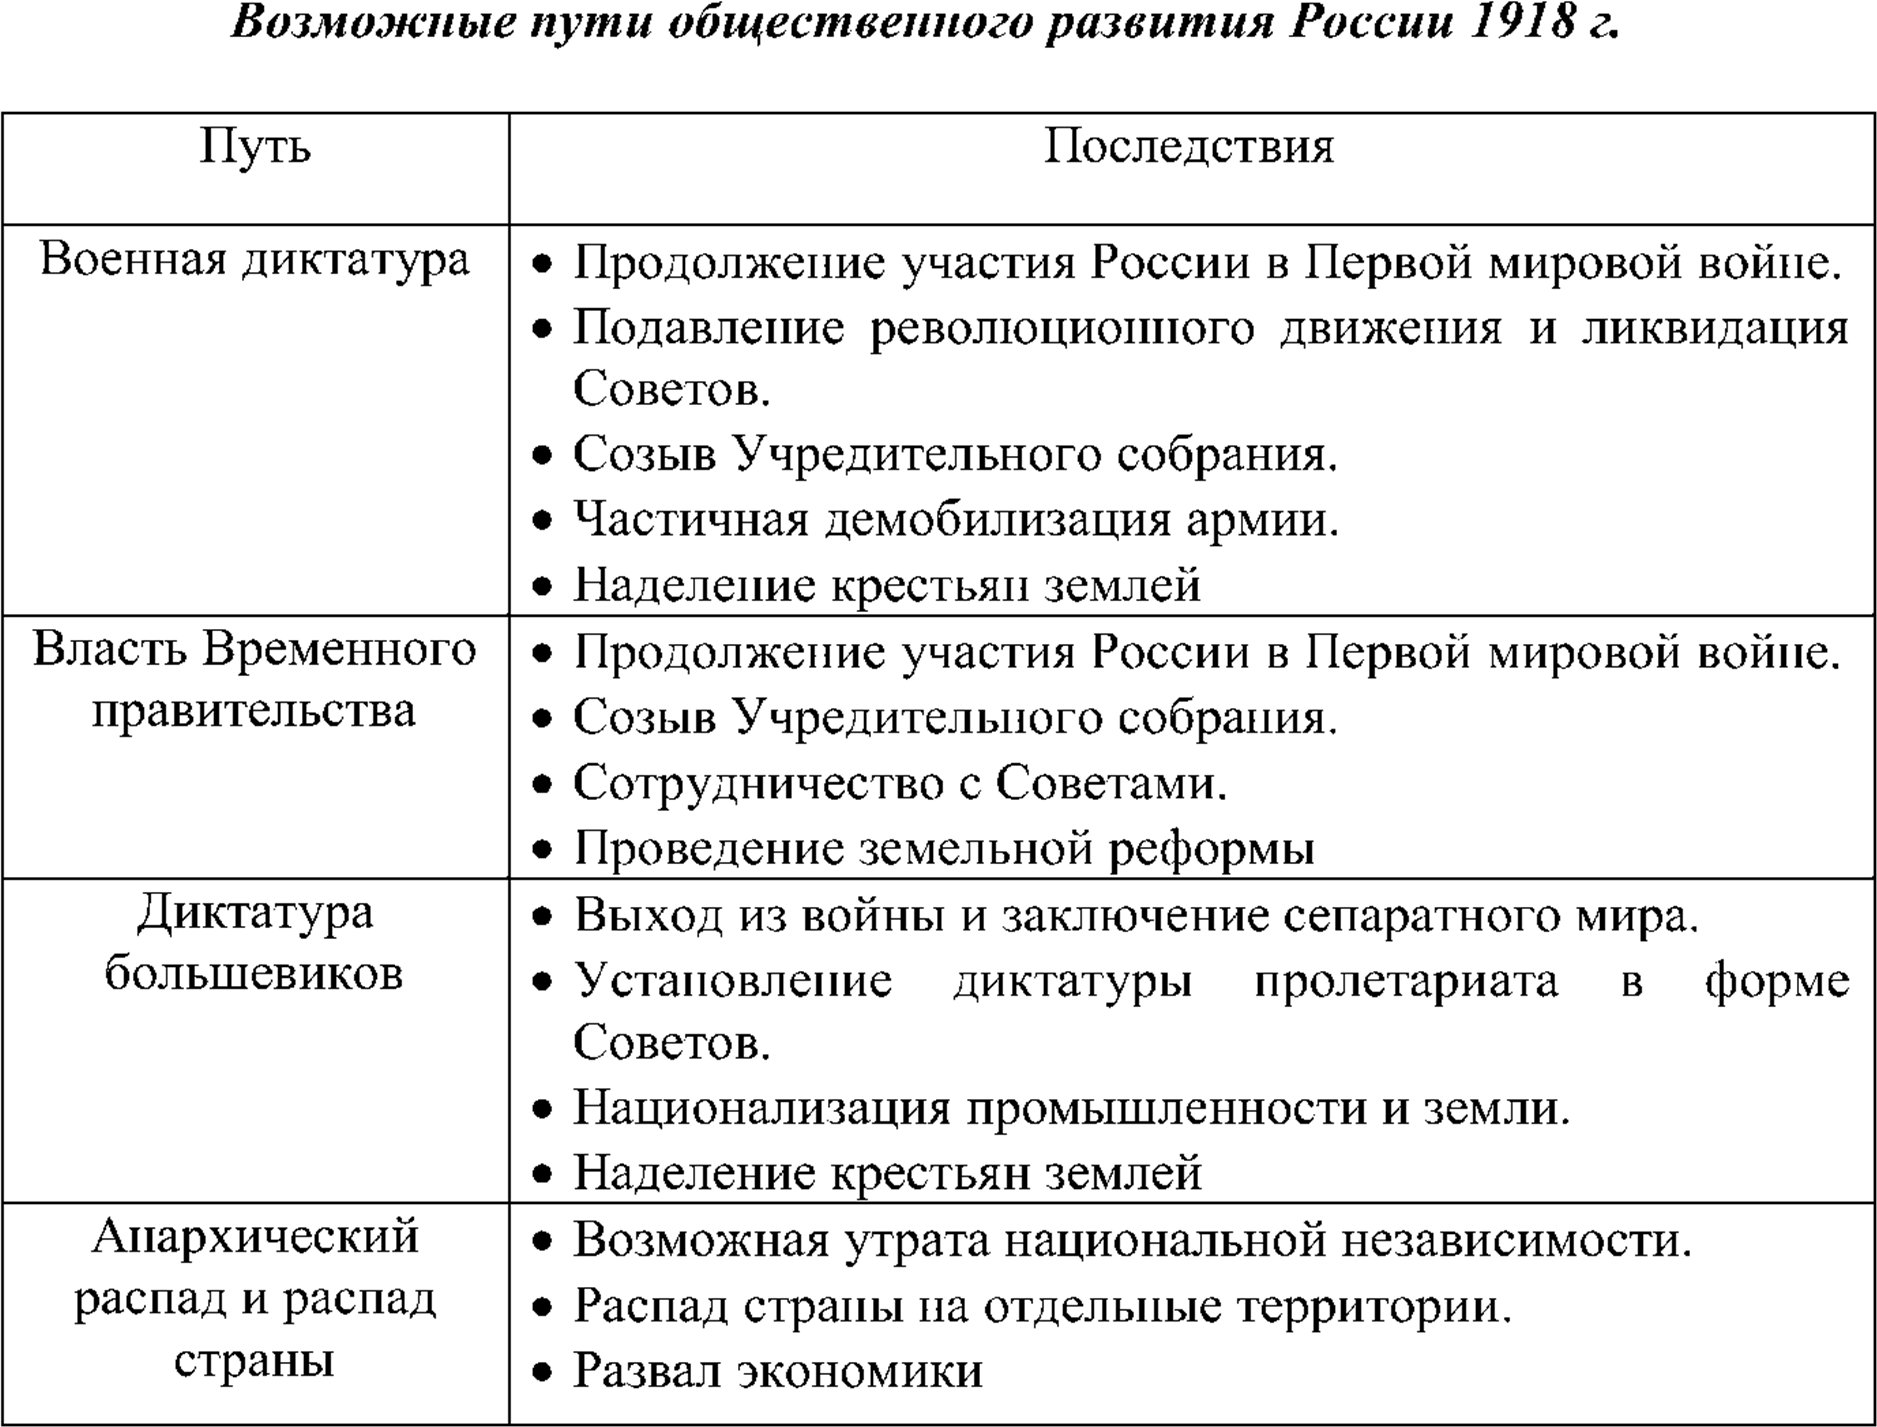 Возможные пути общественного развития России 1918 г.